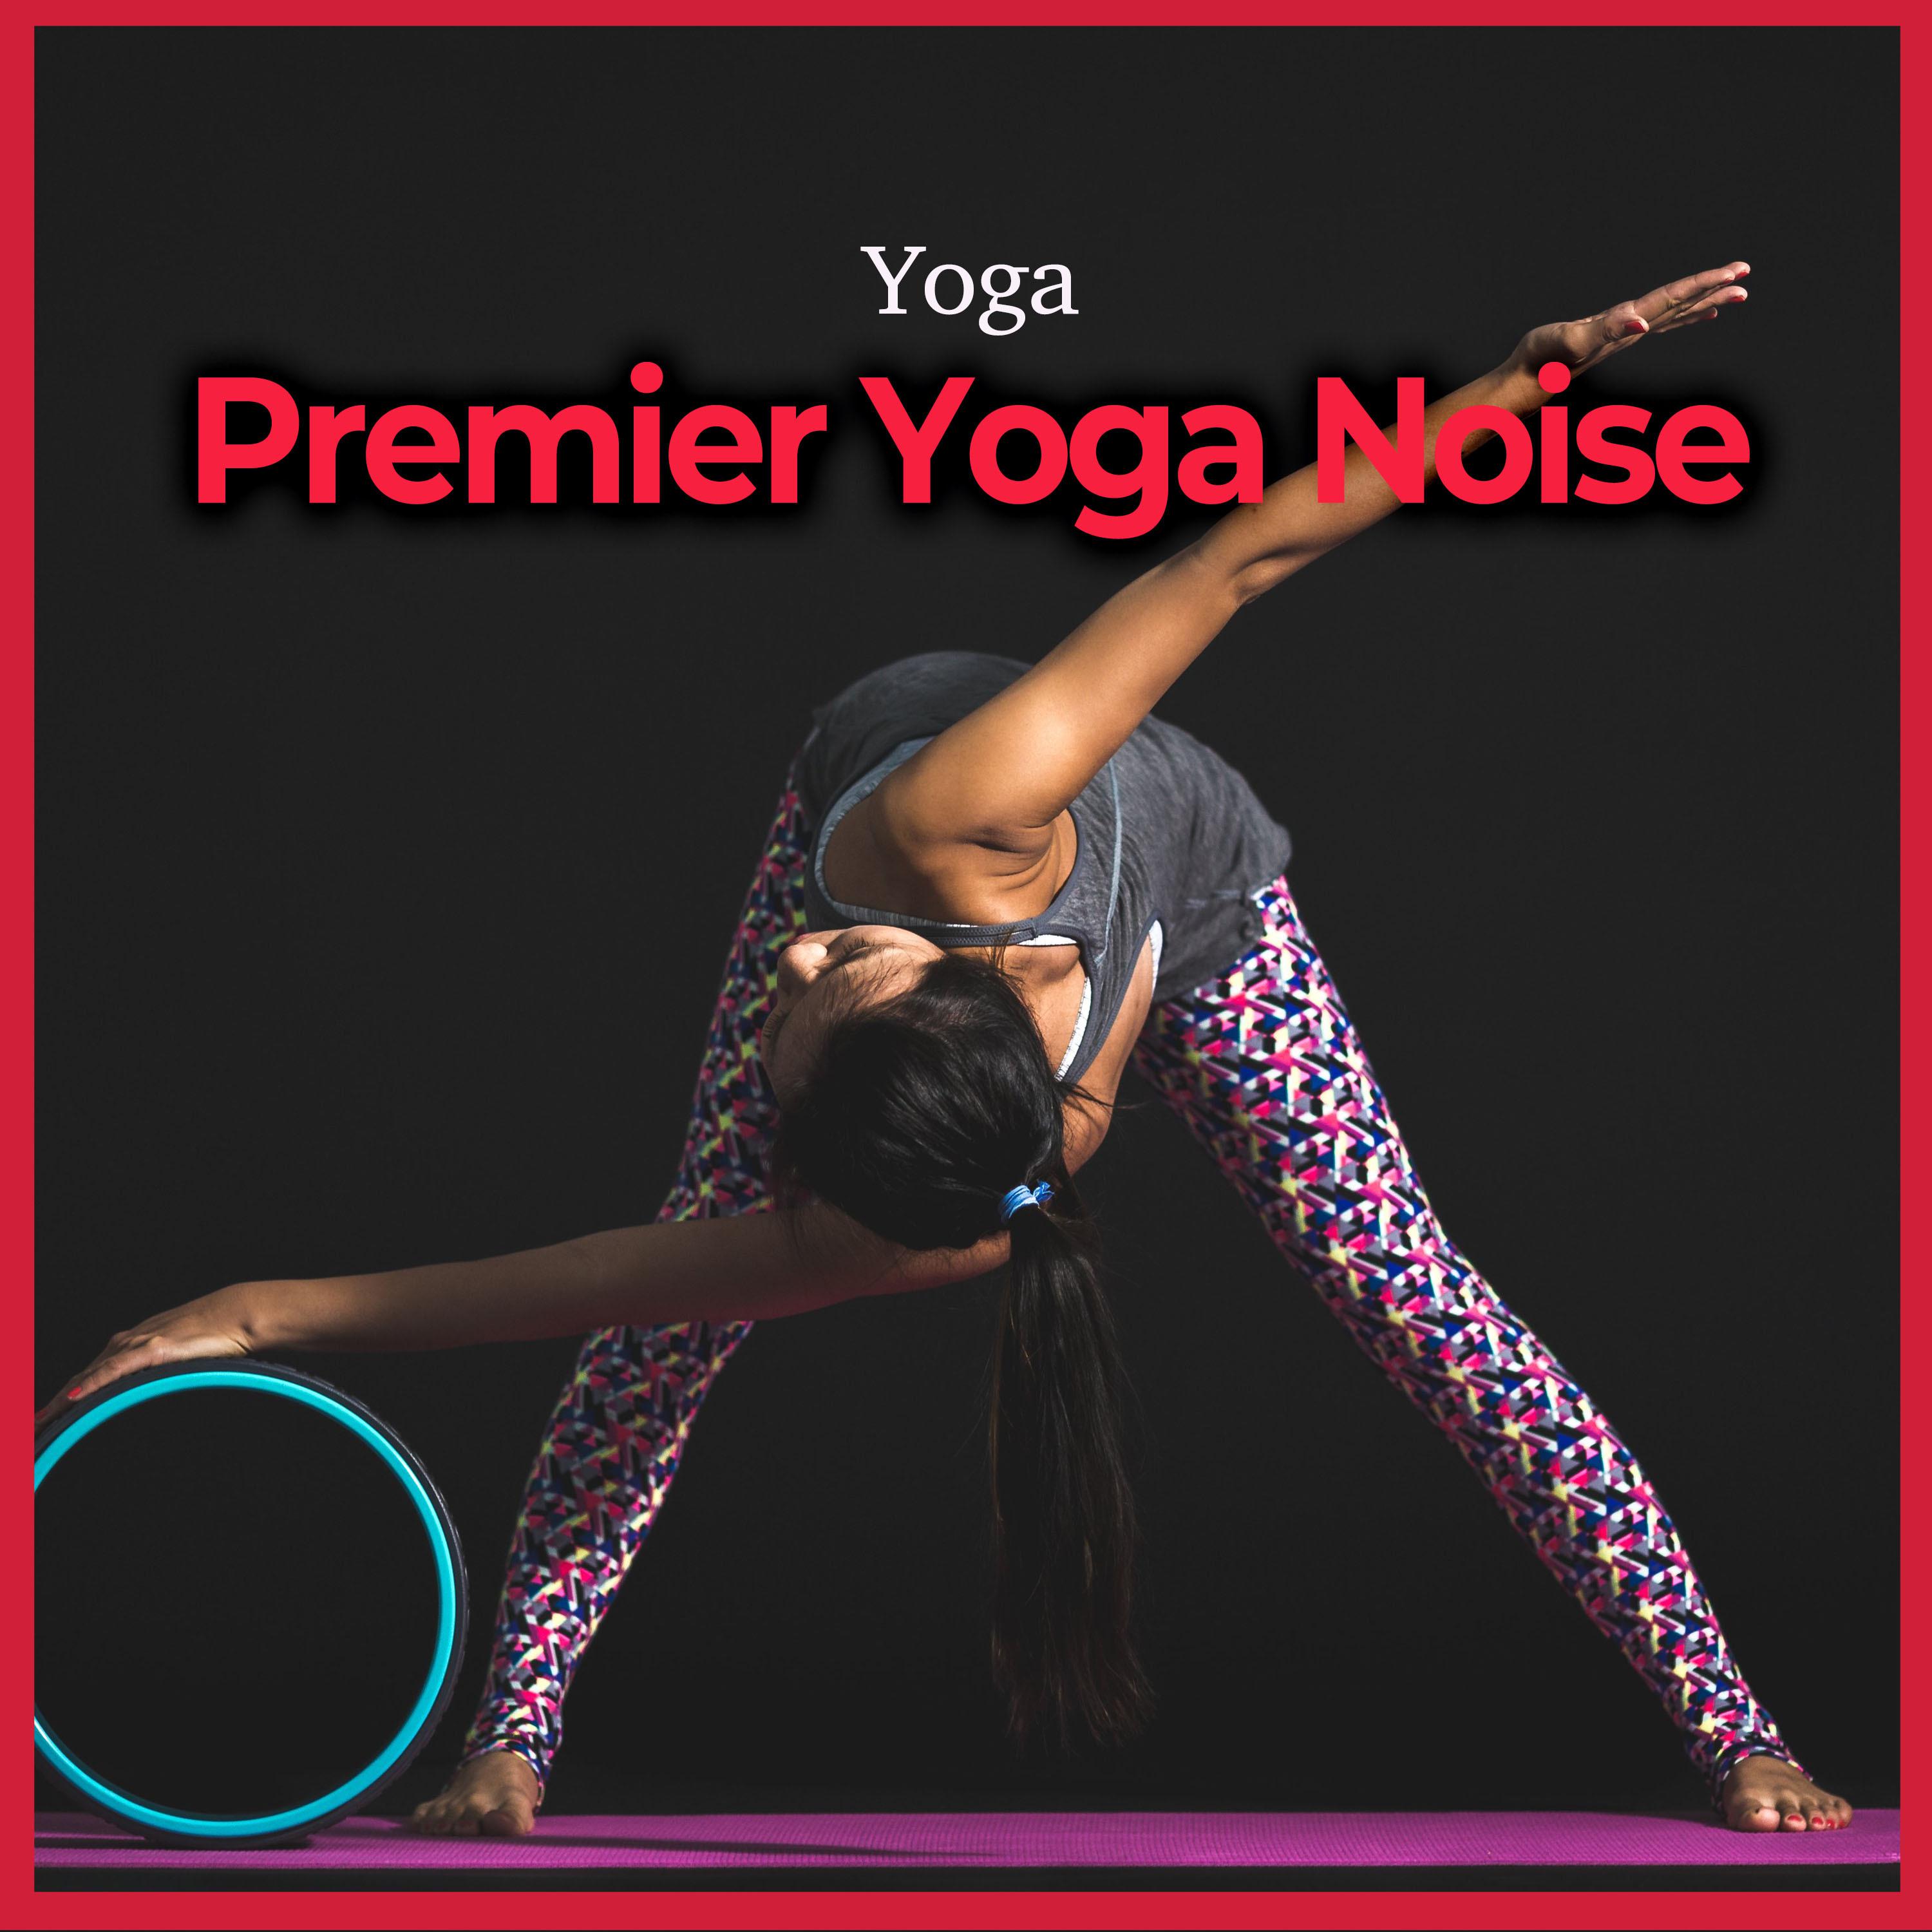 Premier Yoga Noise